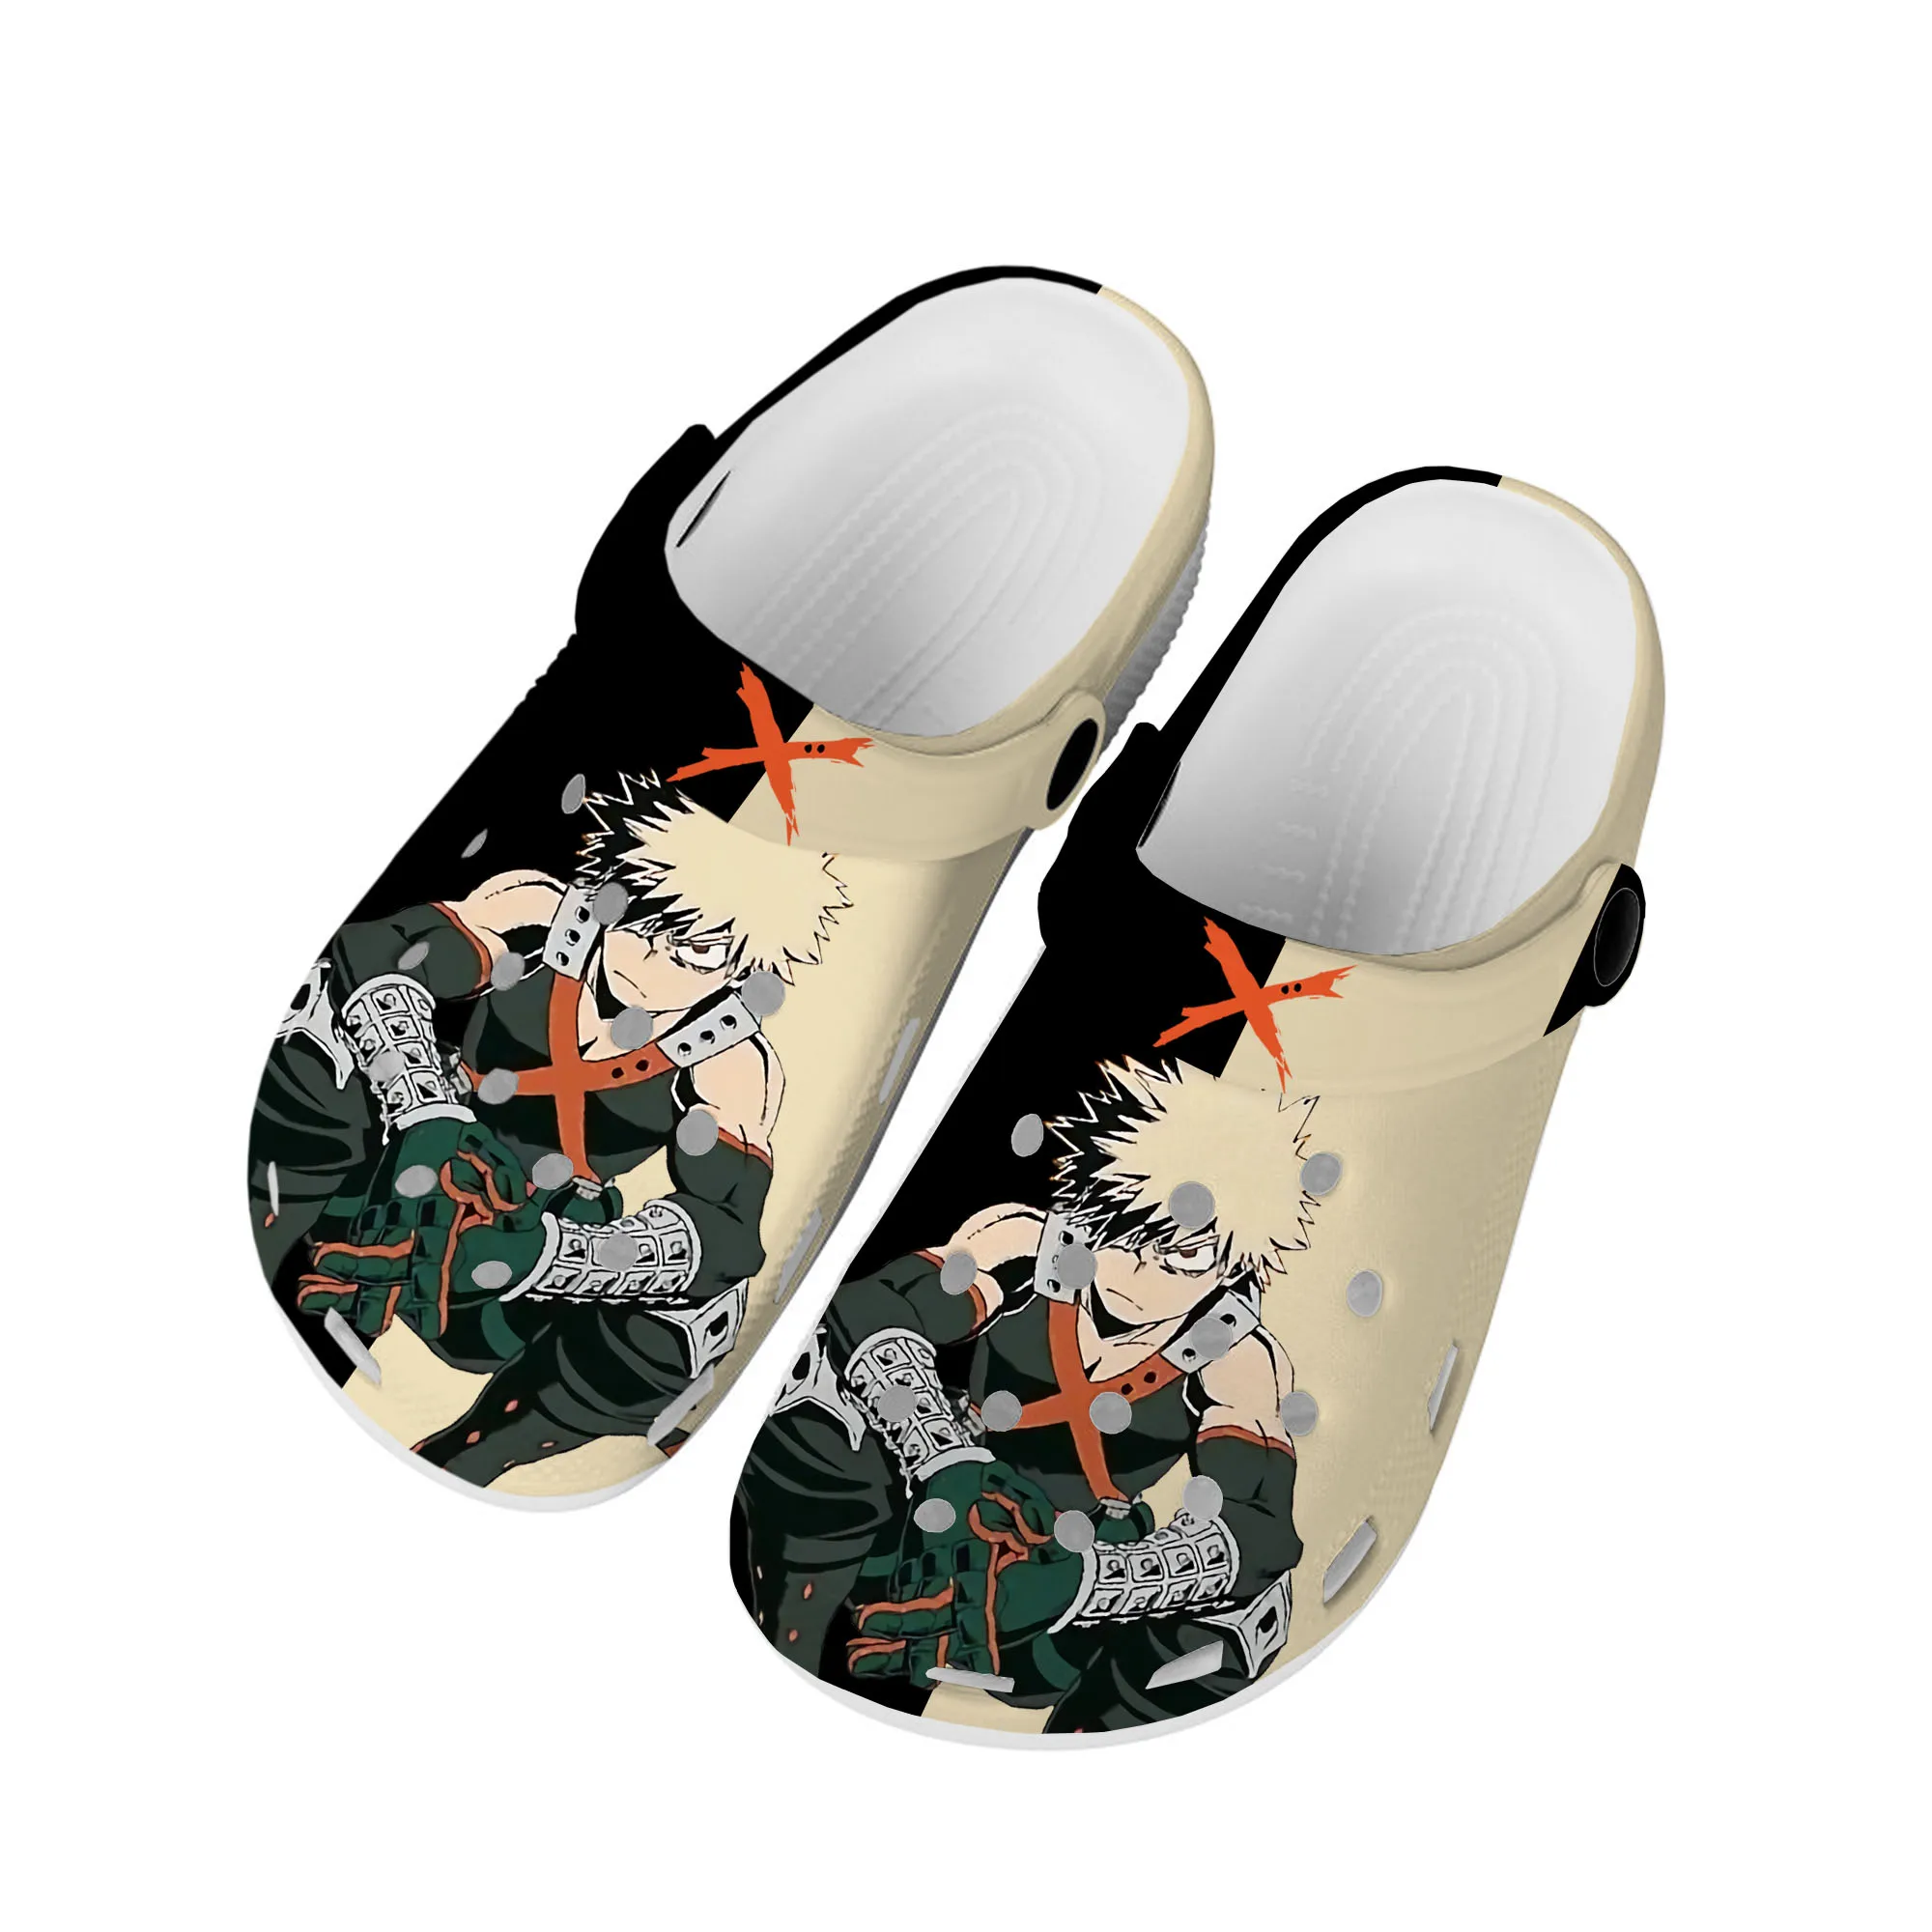 

Аниме Bakugou Katsuki мой герой Академия домашние Сабо пользовательская обувь для воды Мужская Женская подростковая обувь садовые Туфли-сабо пляжные тапочки с дырками